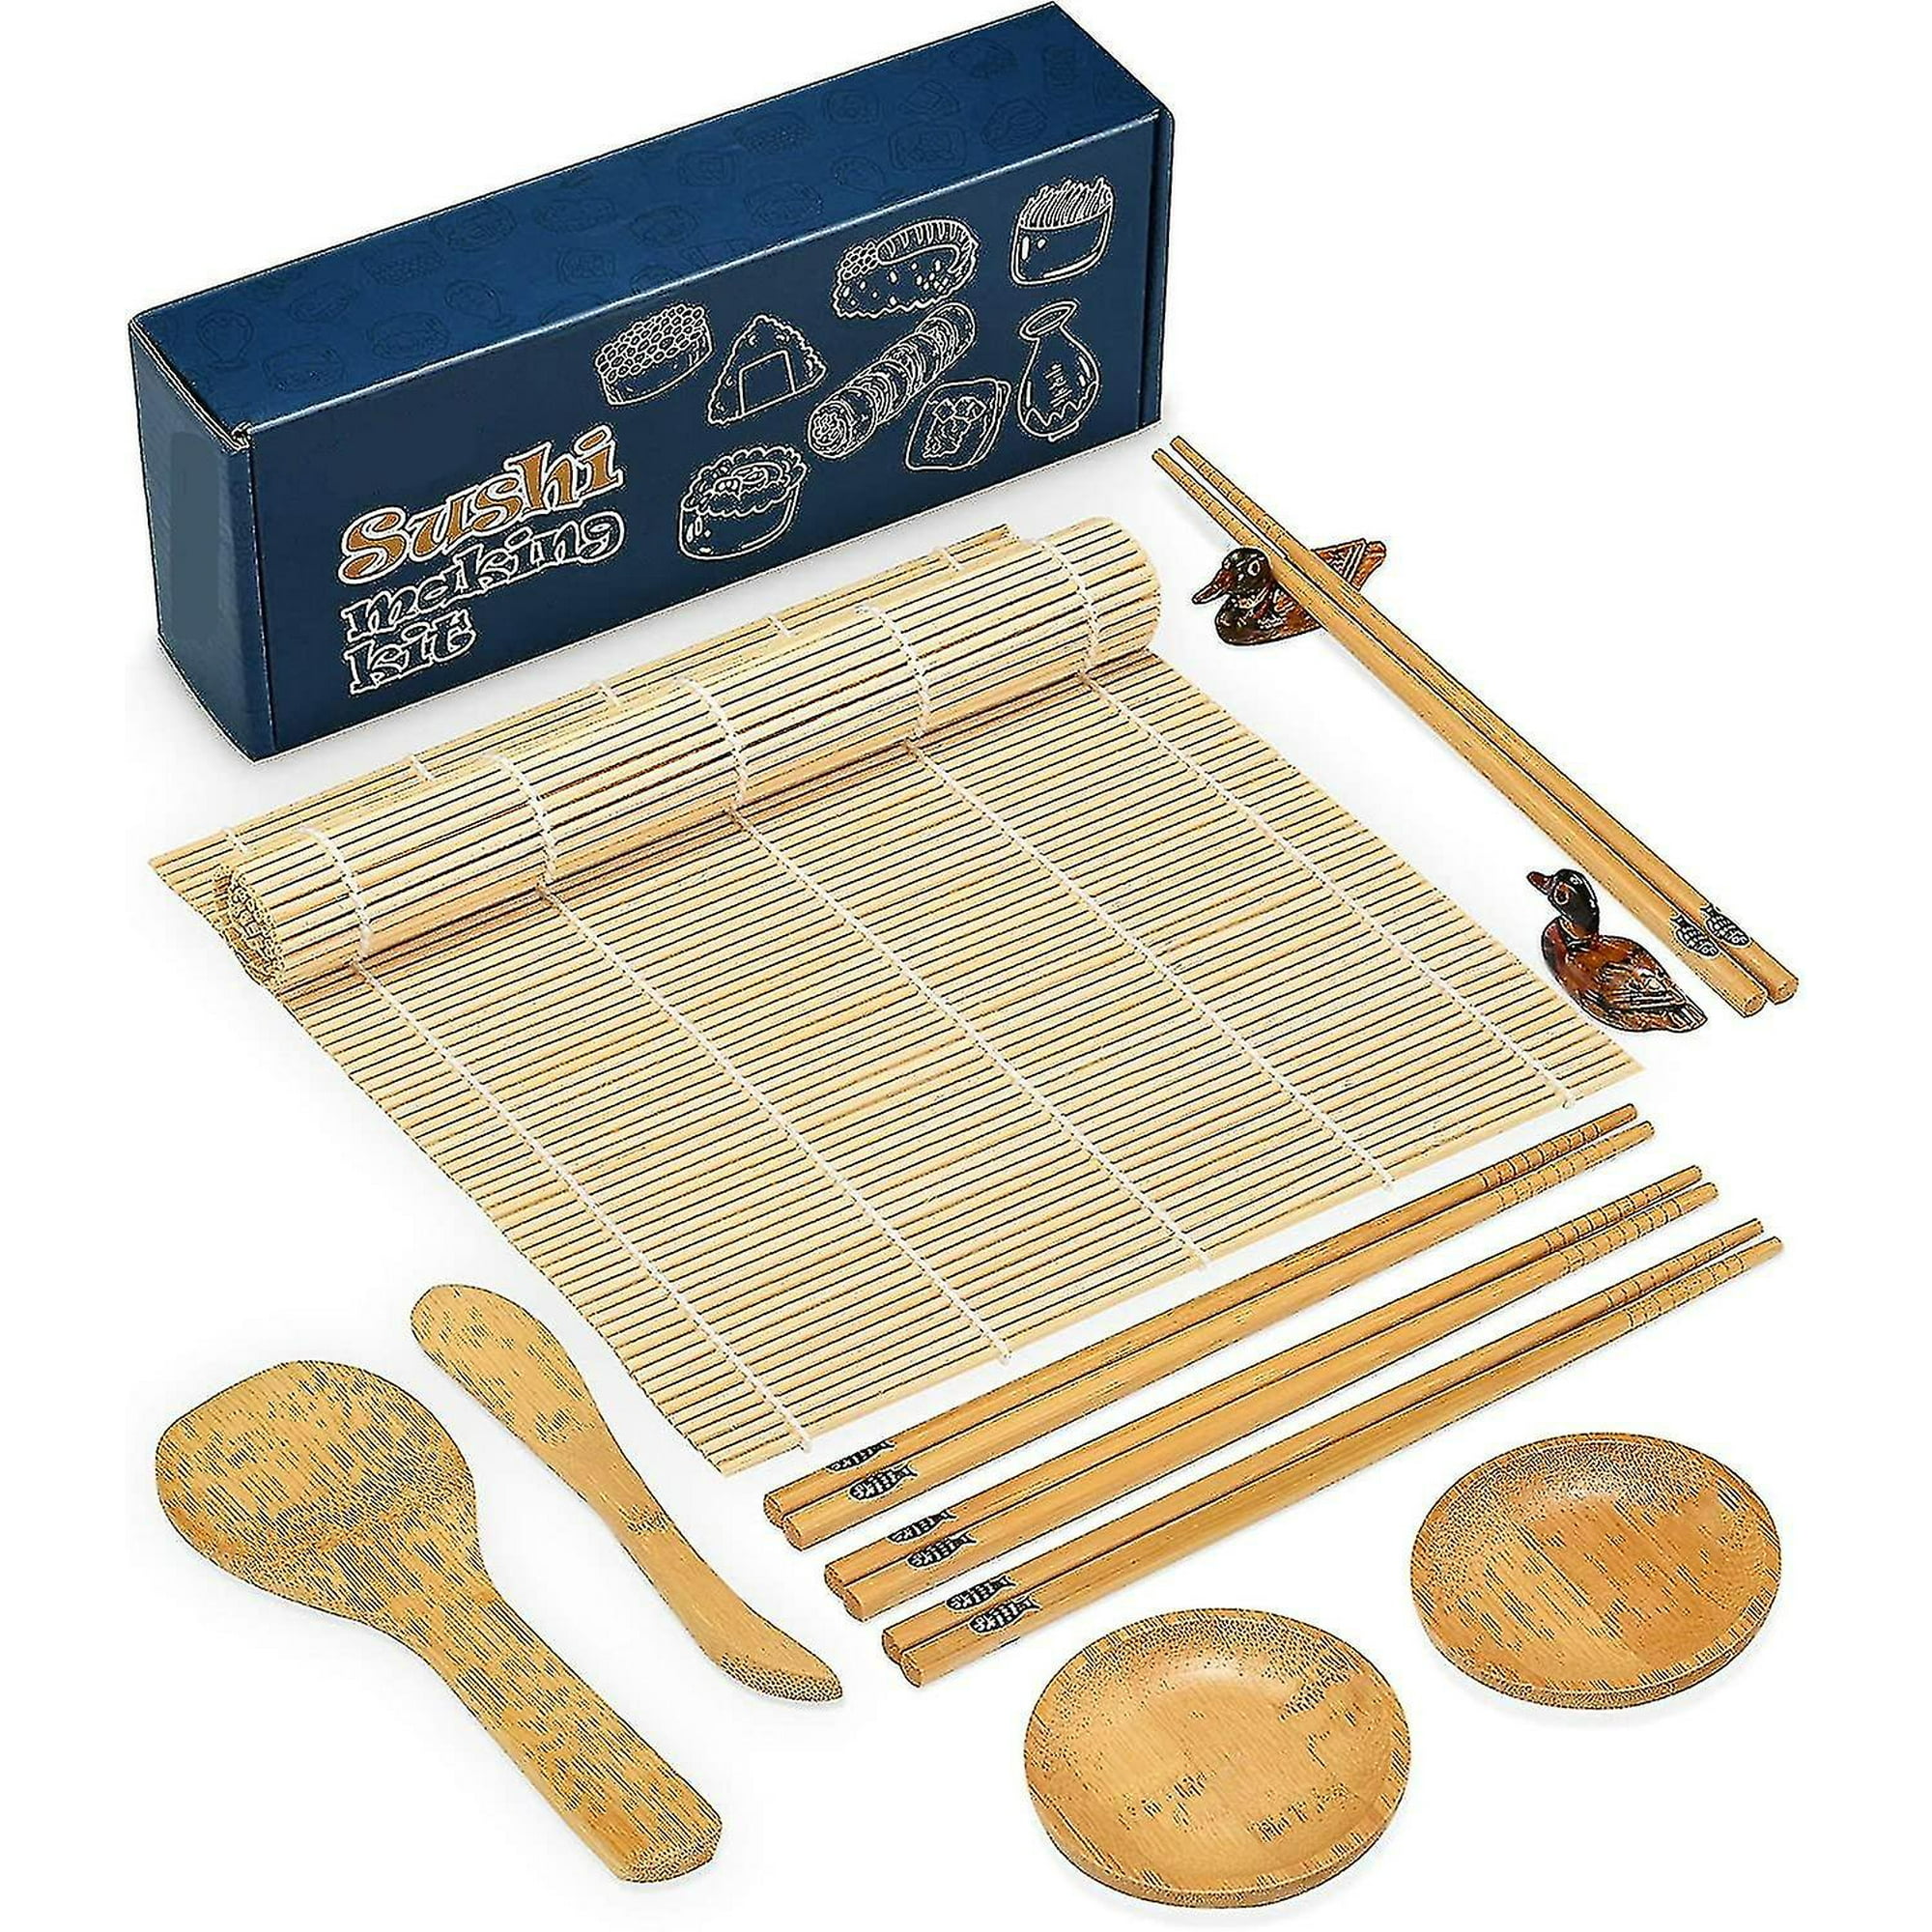 HI NINGER Kit completo de fabricación de sushi para principiantes con  cuchillo de chef, tapete de balanceo de sushi de bambú,  triángulo/donuts/molde